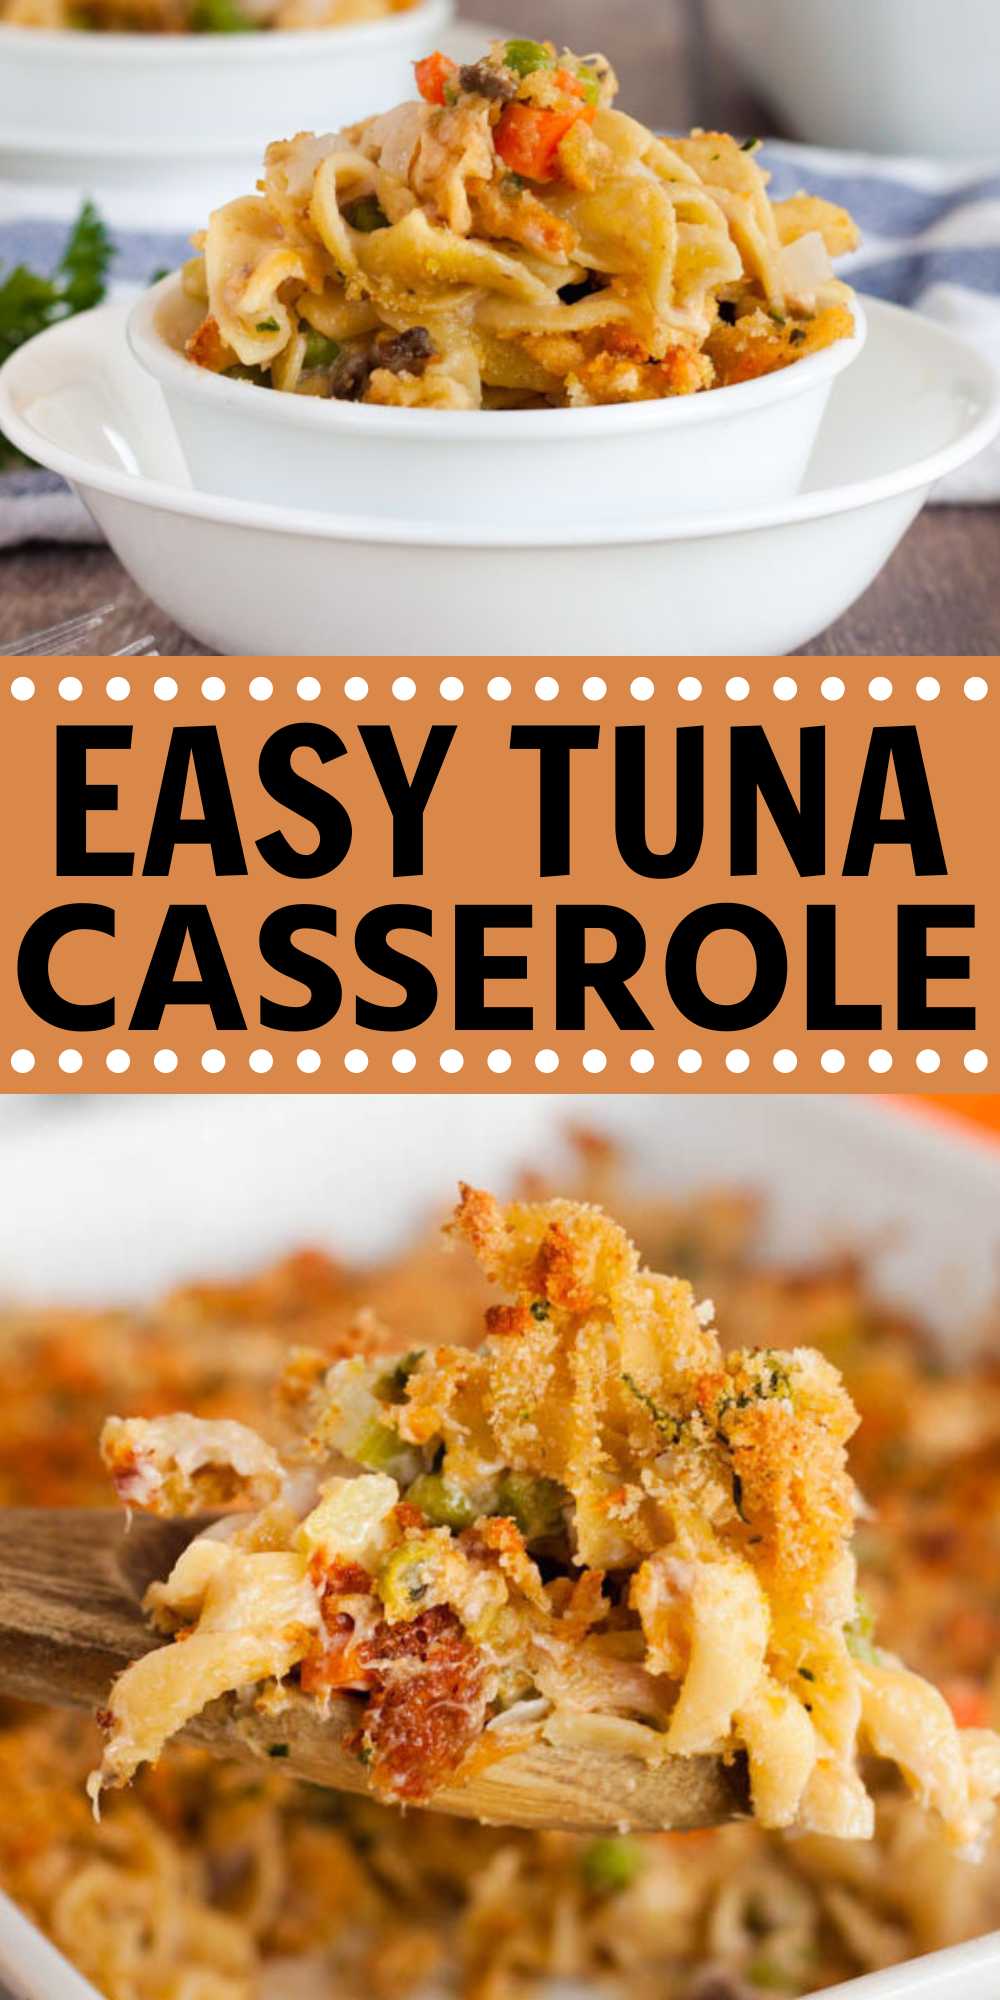 Easy Tuna Casserole Recipe - Ready in under 30 minutes!